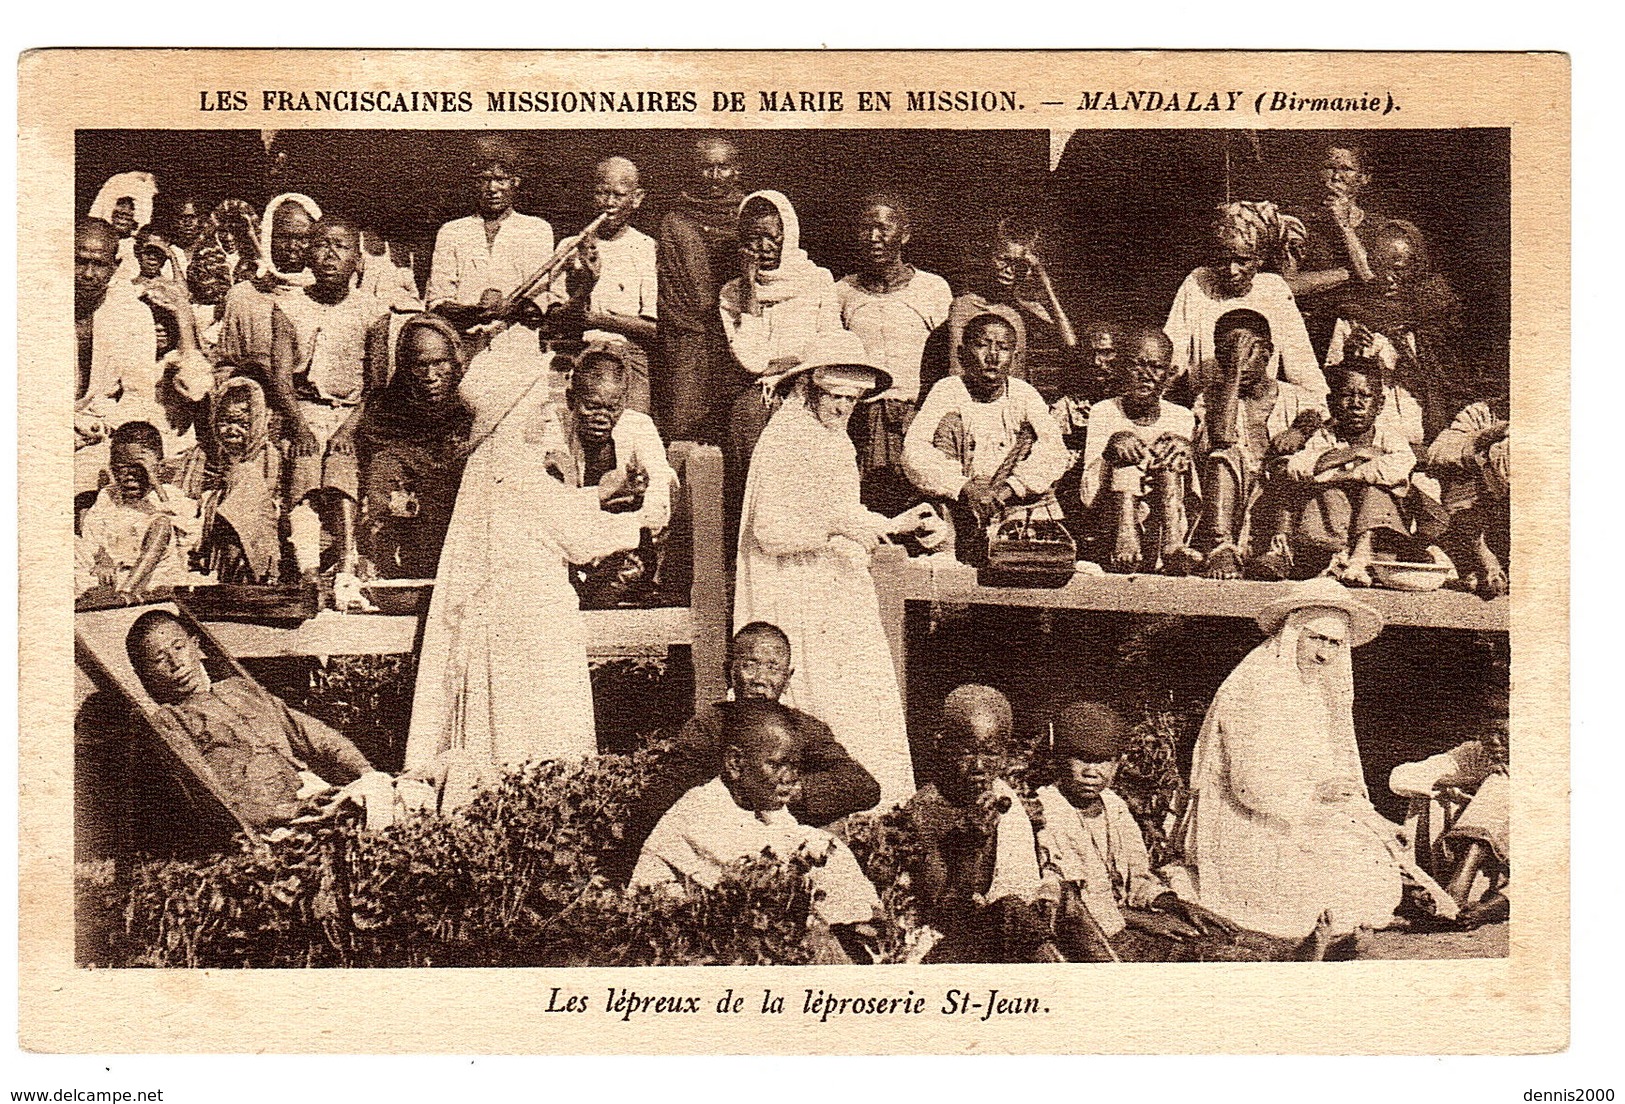 MANDALAY - Les Lépreux De La Léproserie St-Jean - Les Franciscaines Missionnaires De Marie En Mission - Myanmar (Burma)